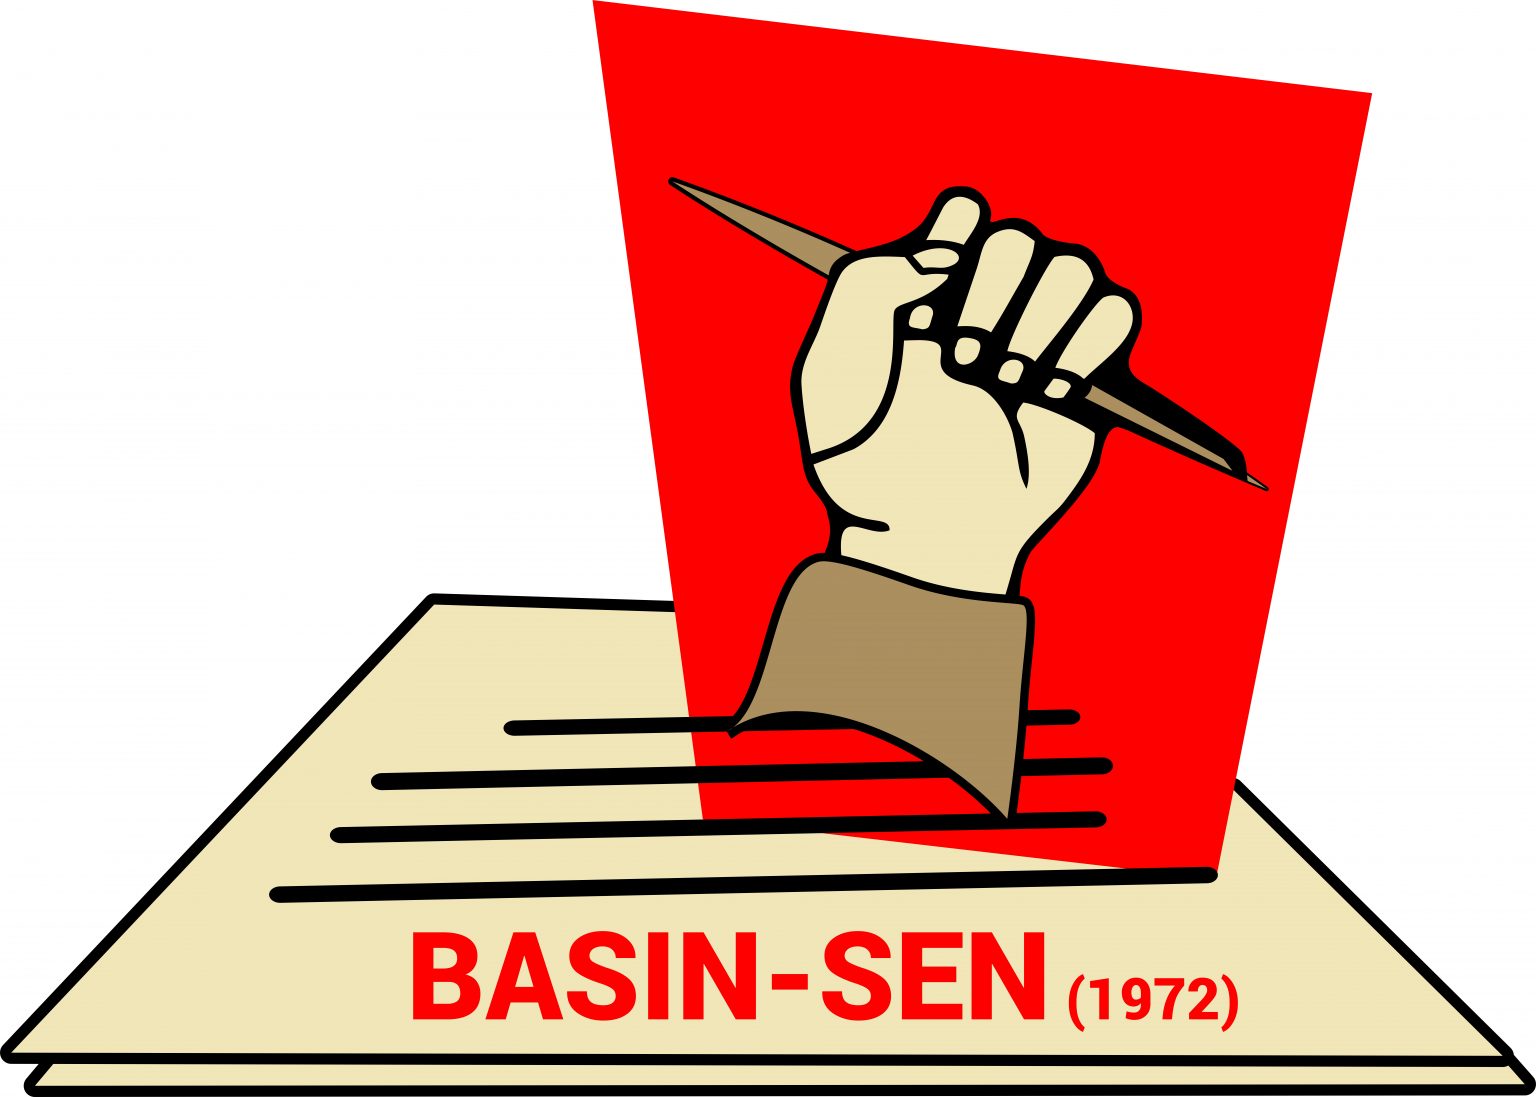 BASIN-SEN, TRT’de yayınlanan diziye yönelik endişlelerini aktardı